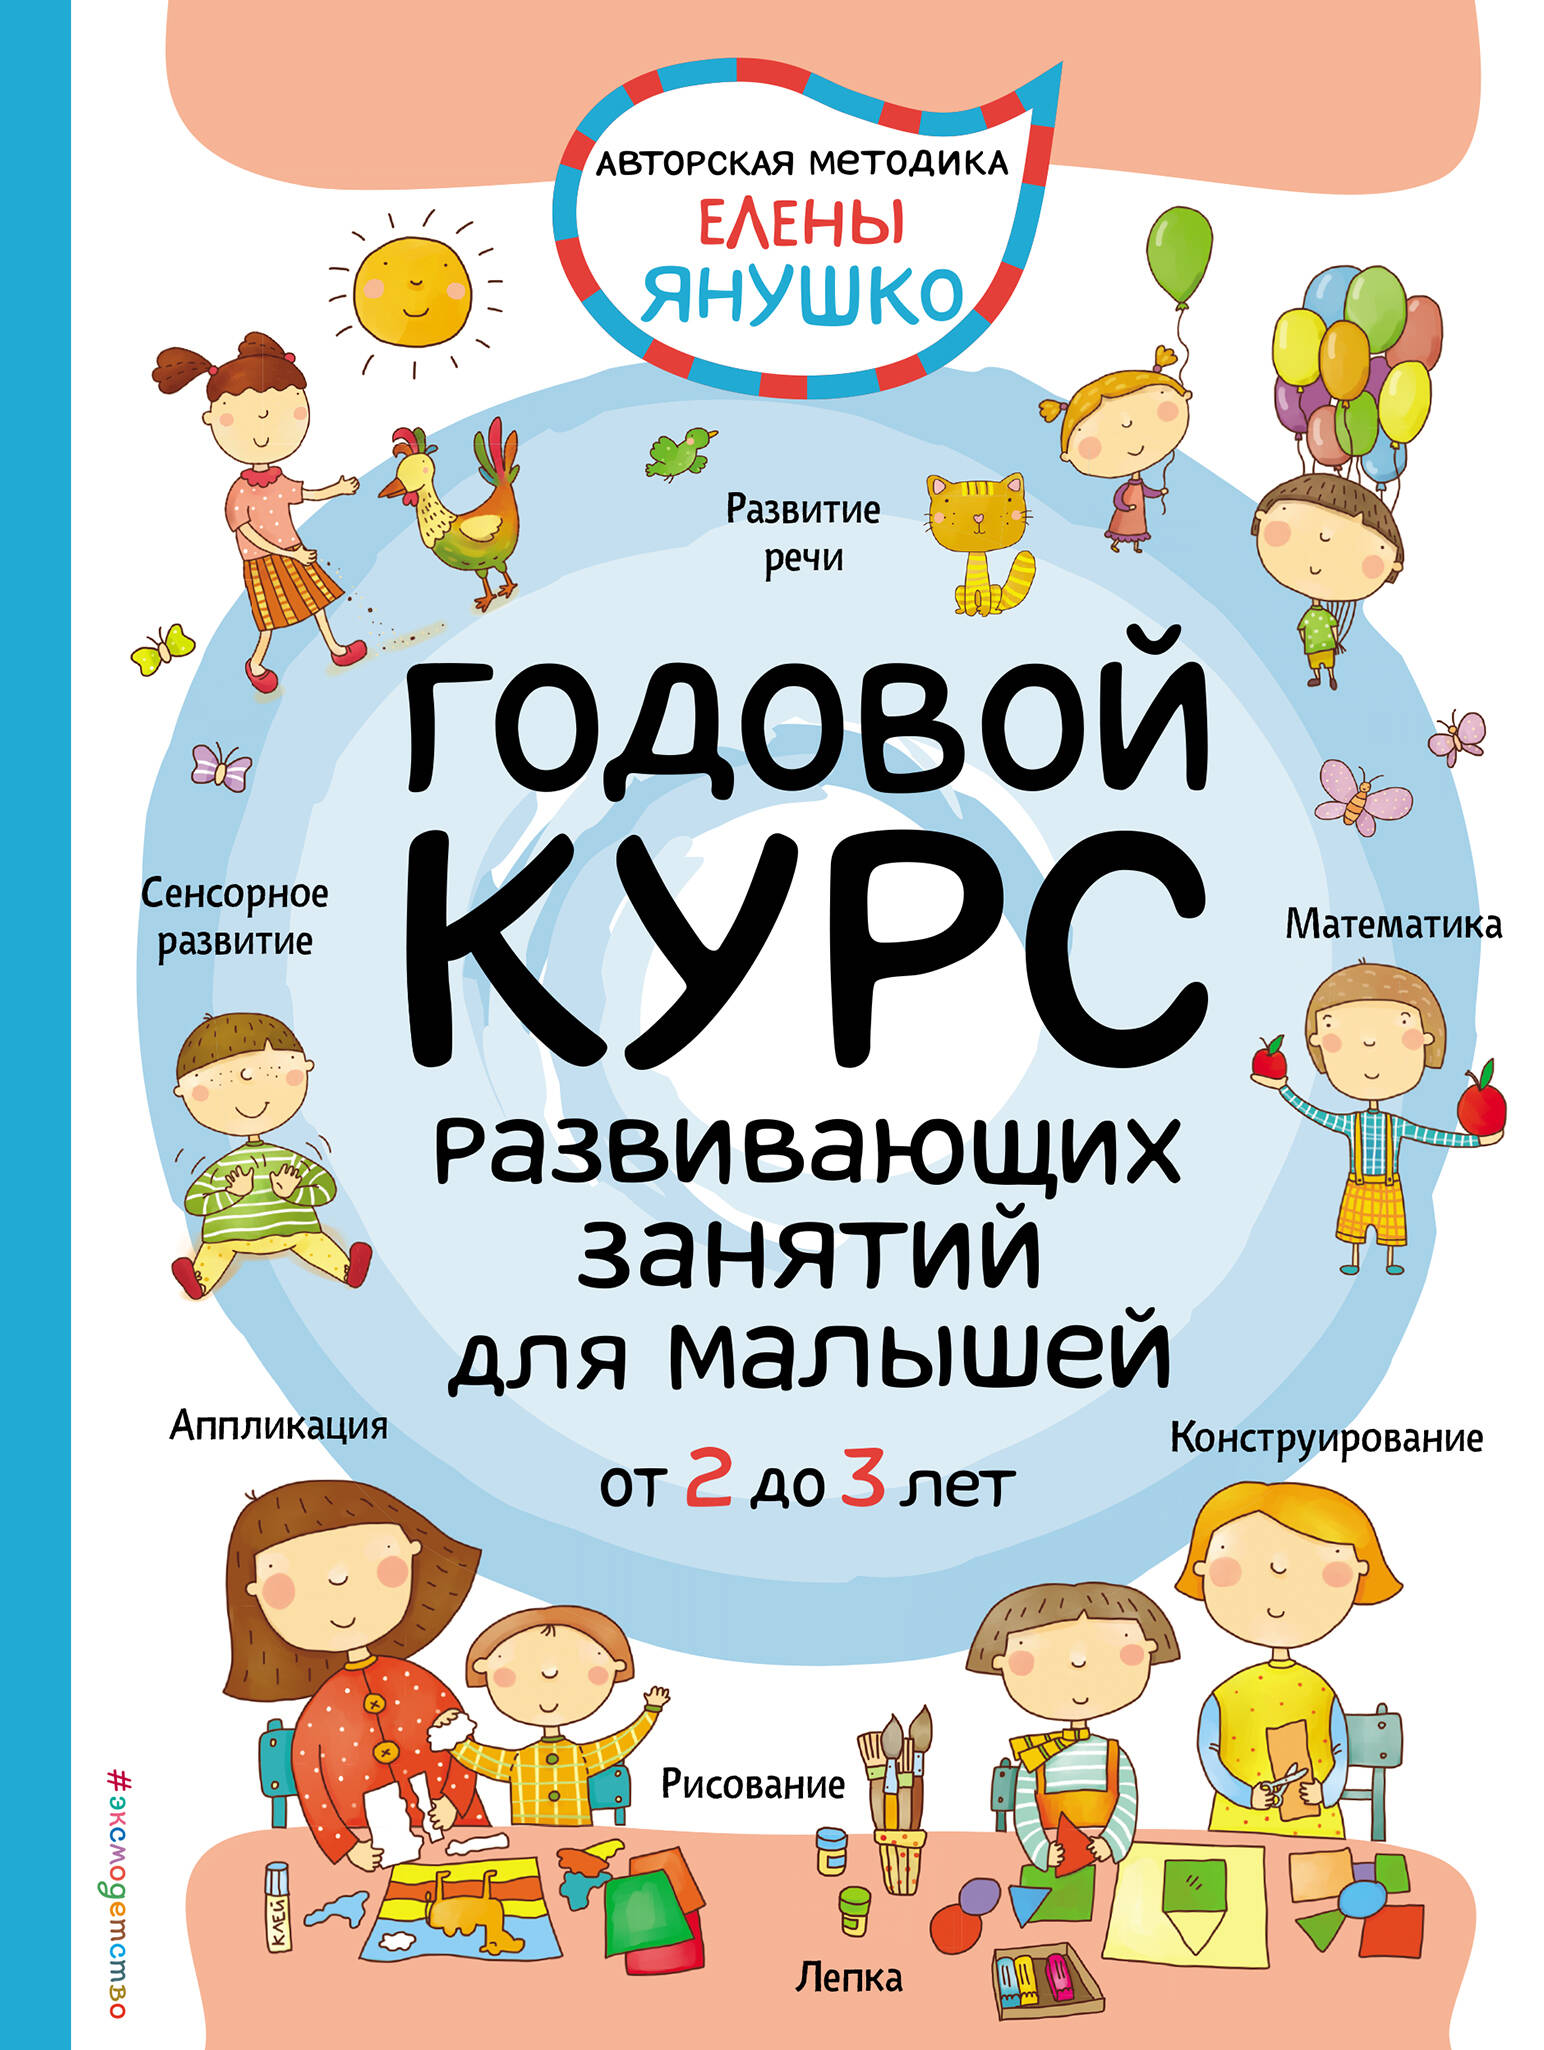 Янушко Елена Альбиновна - 2+ Годовой курс развивающих занятий для малышей от 2 до 3 лет